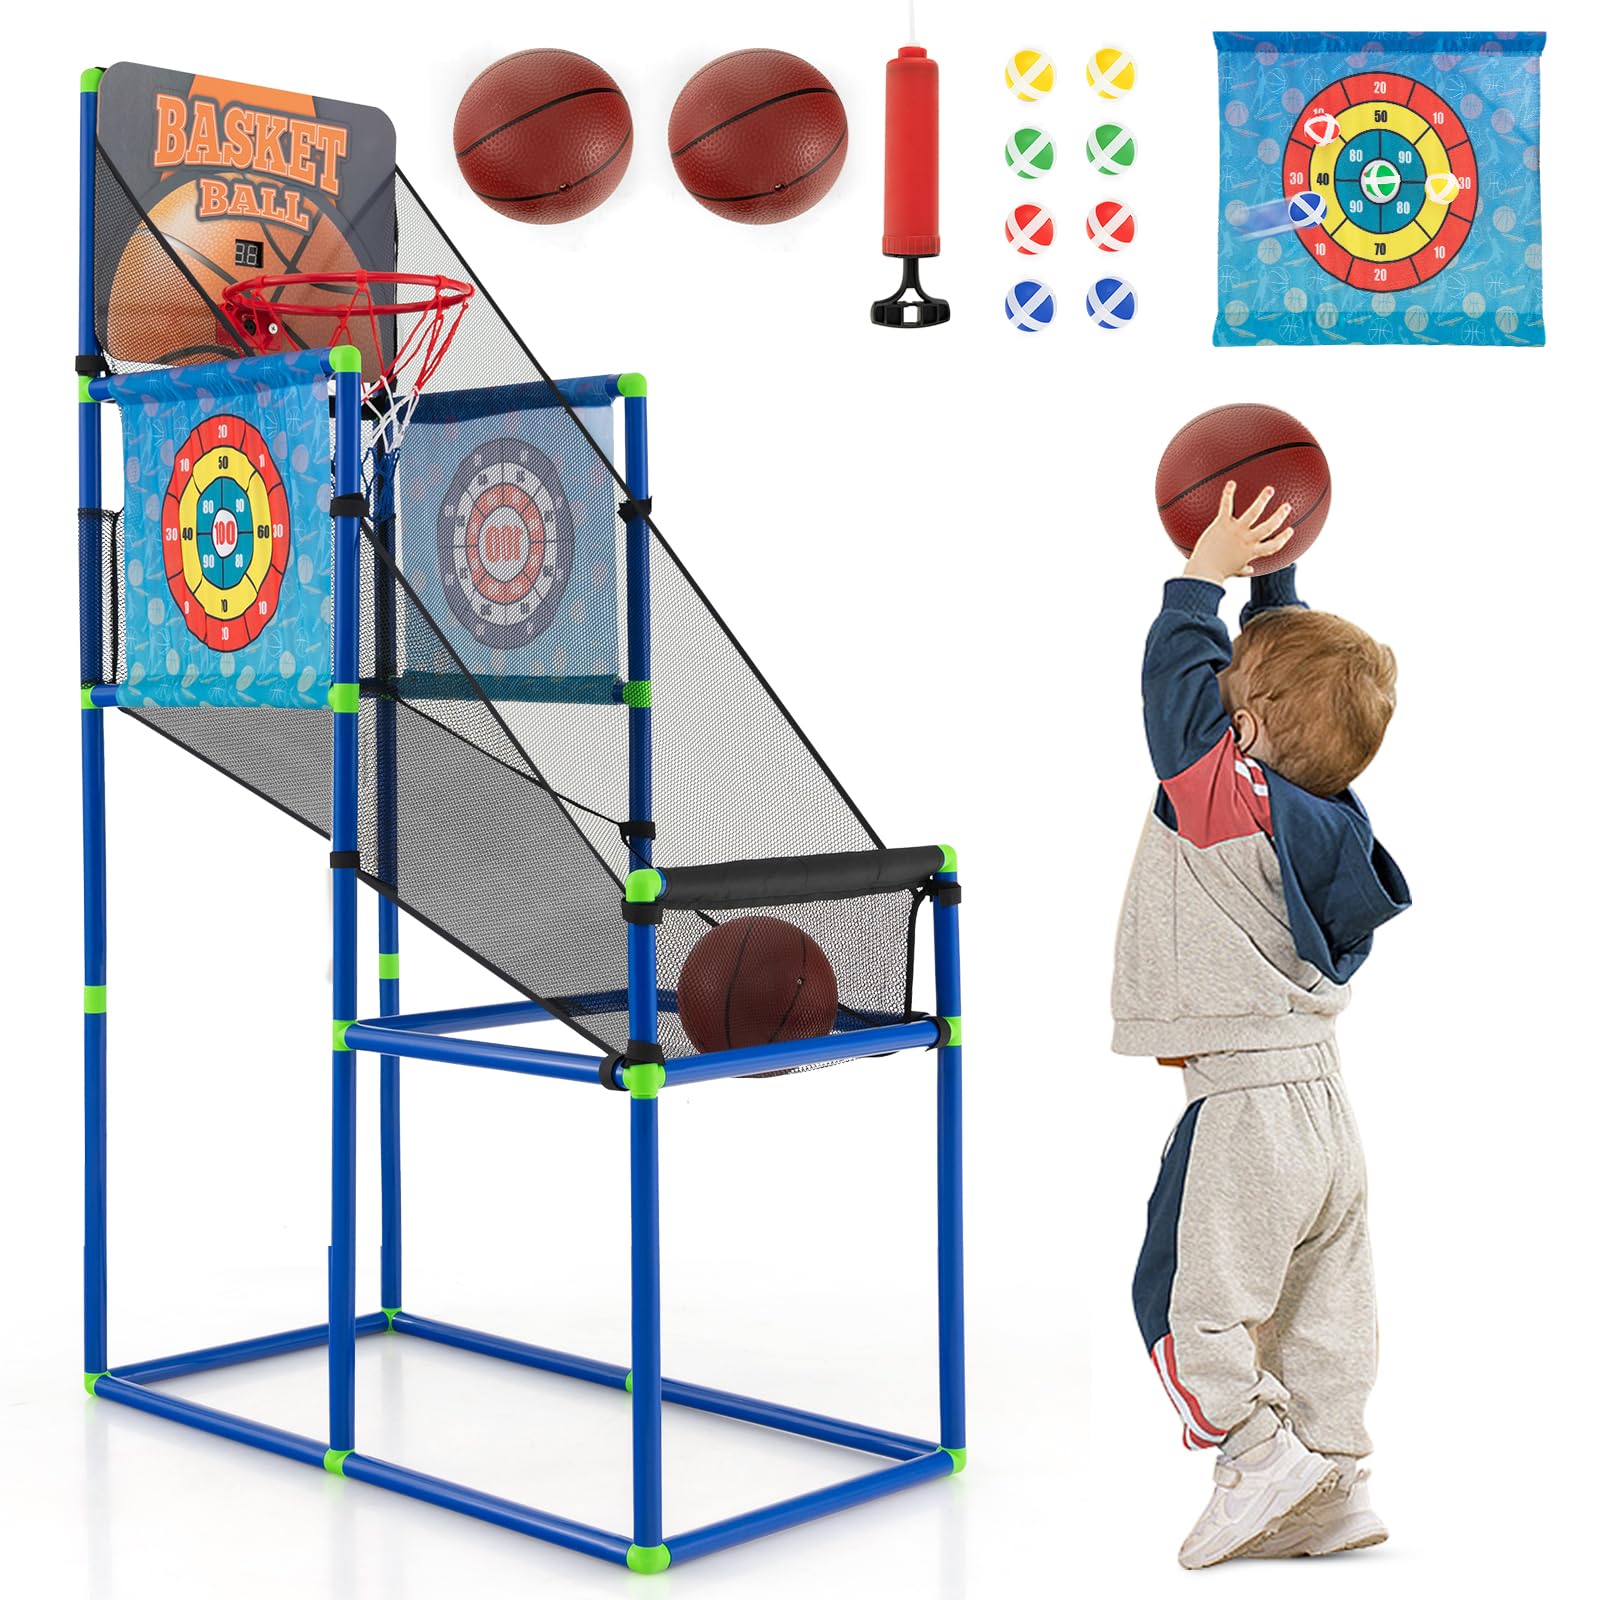 Giantex Kids Basketball Hoop Arcade Game, 2 in 1 Indoor Outdoor Arcade Basketball Game